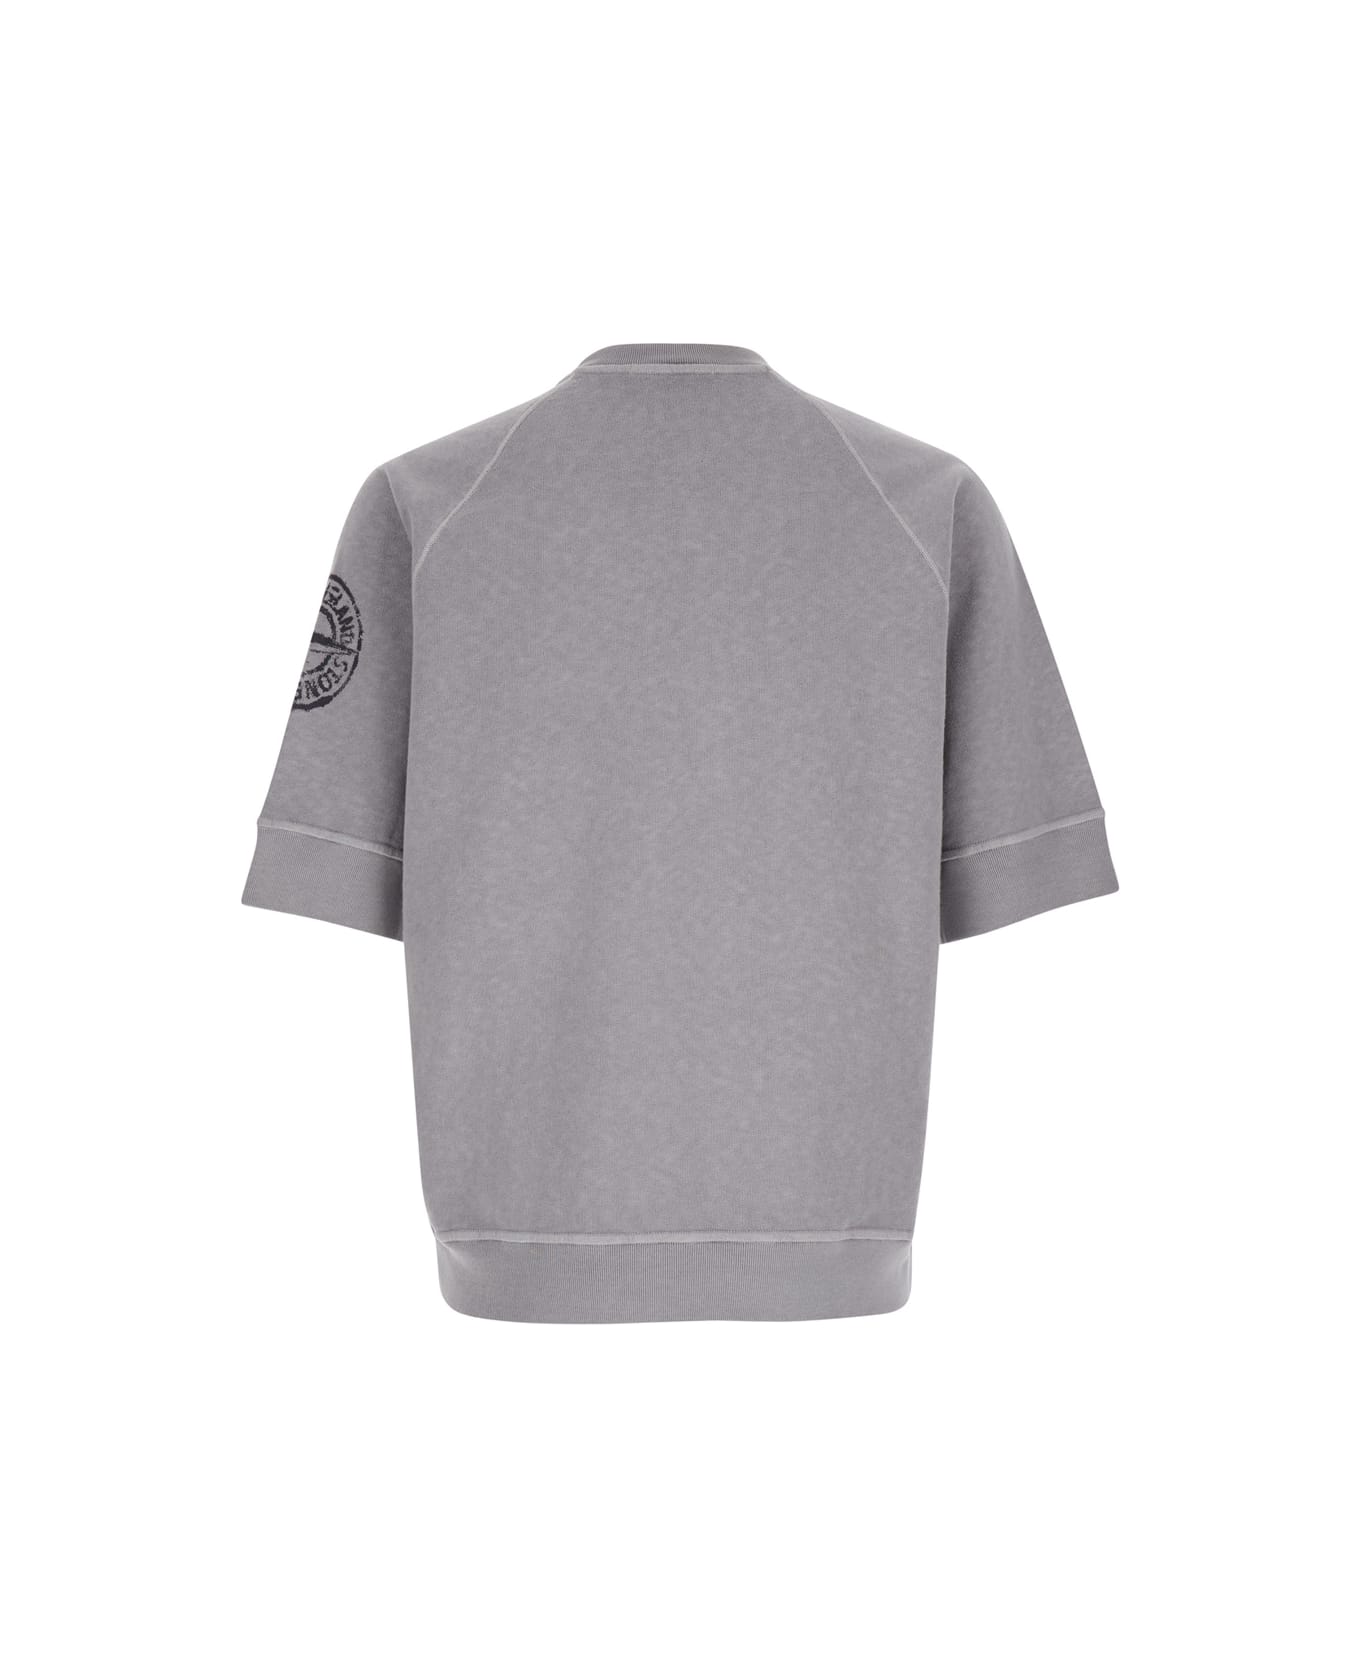 Stone Island Grey Crewneck T-shirt In Cotton Man - Grey フリース